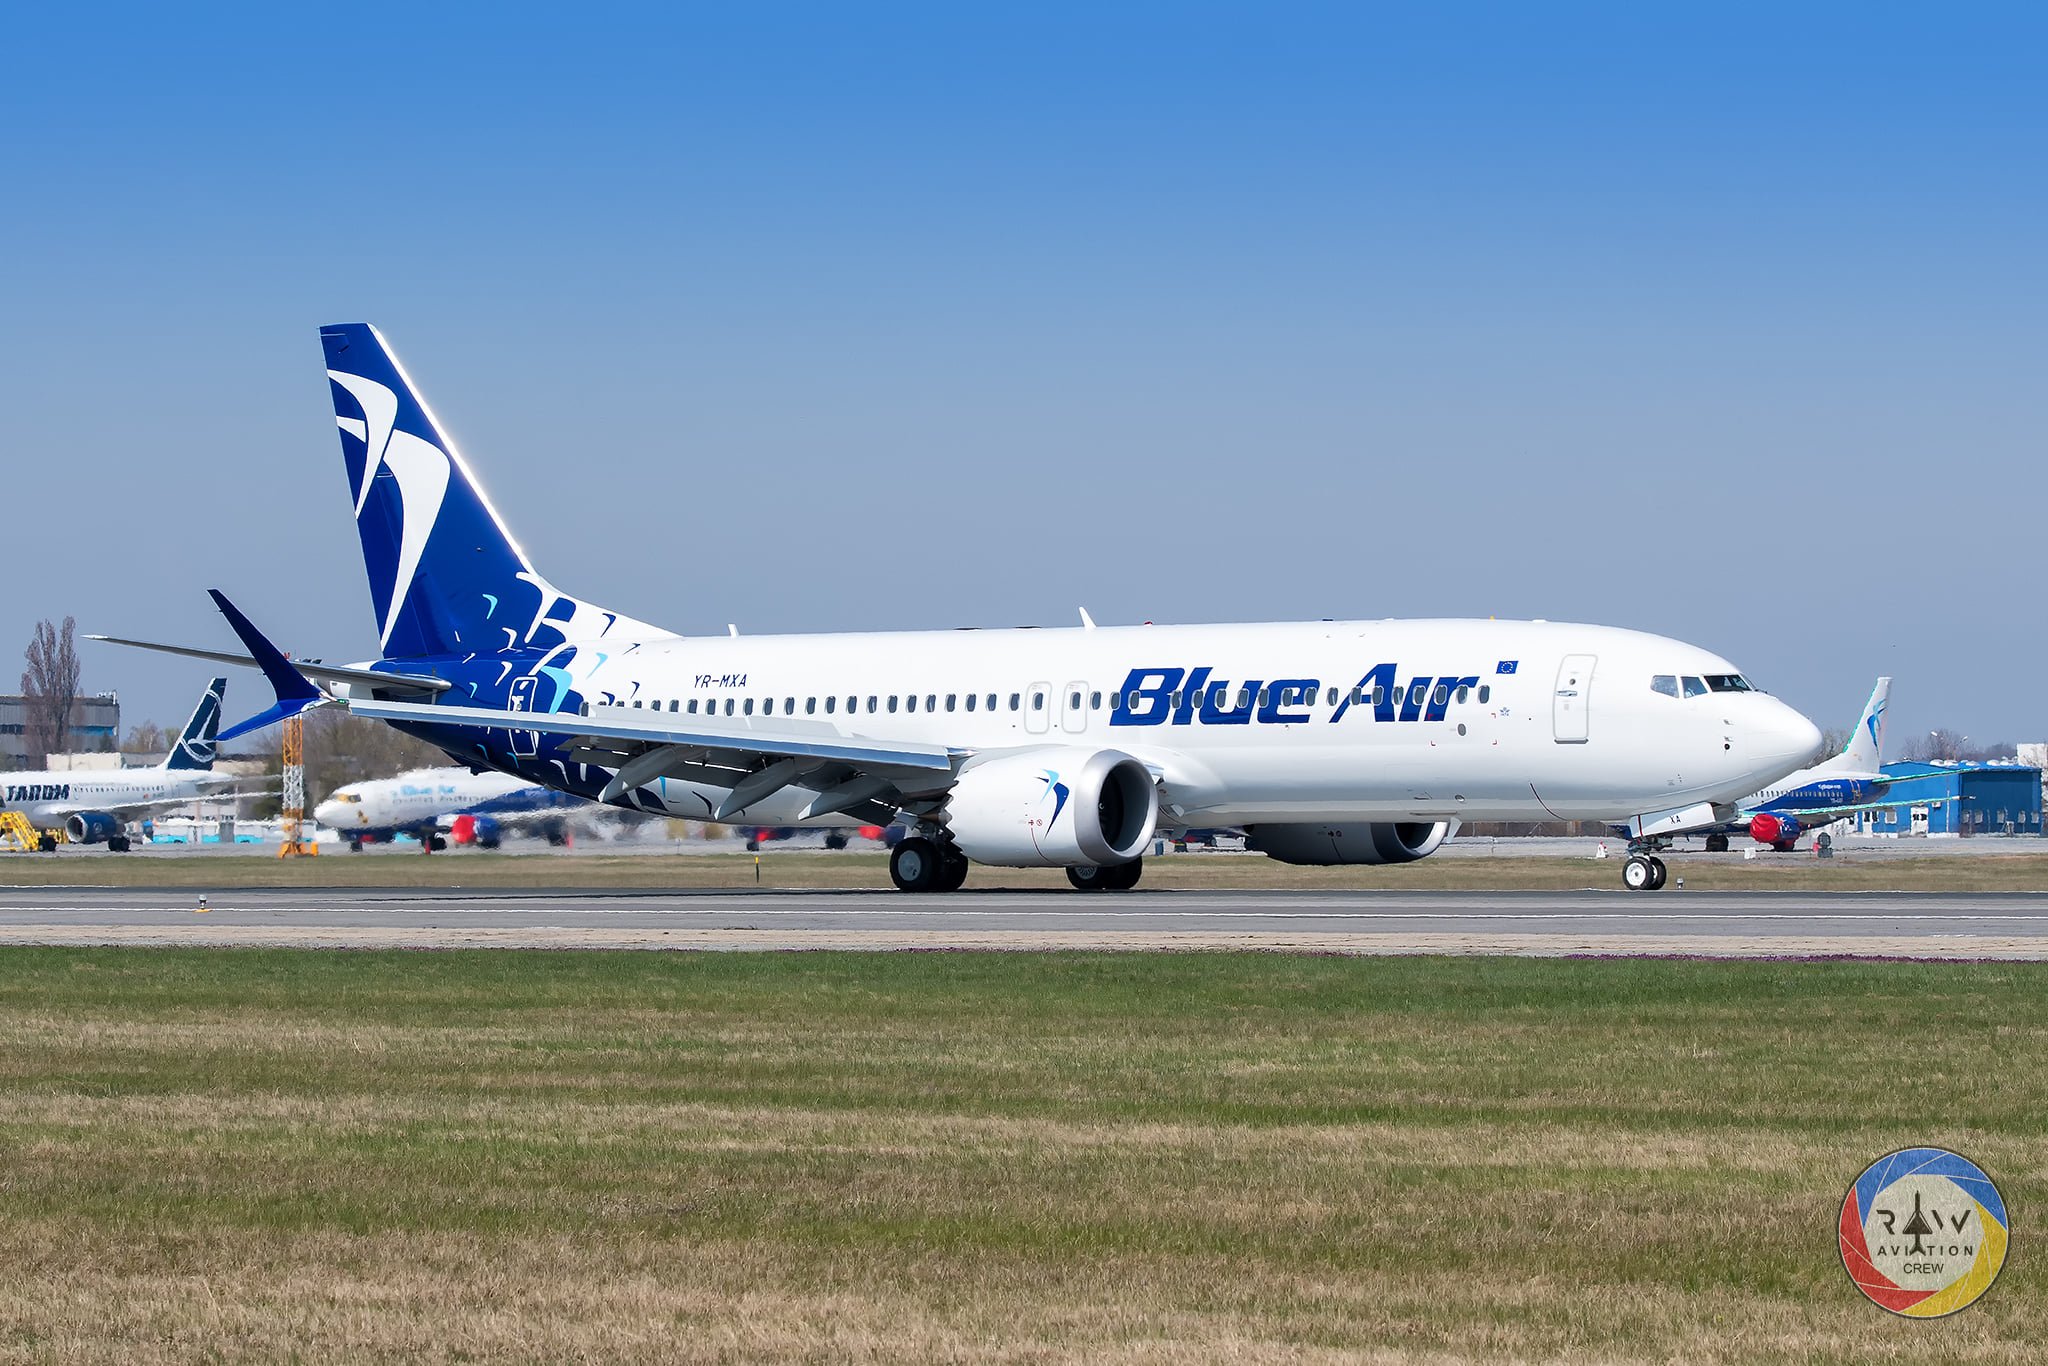  Un nou zbor Blue Air de pe Aeroportul Iași de săptămâna viitoare